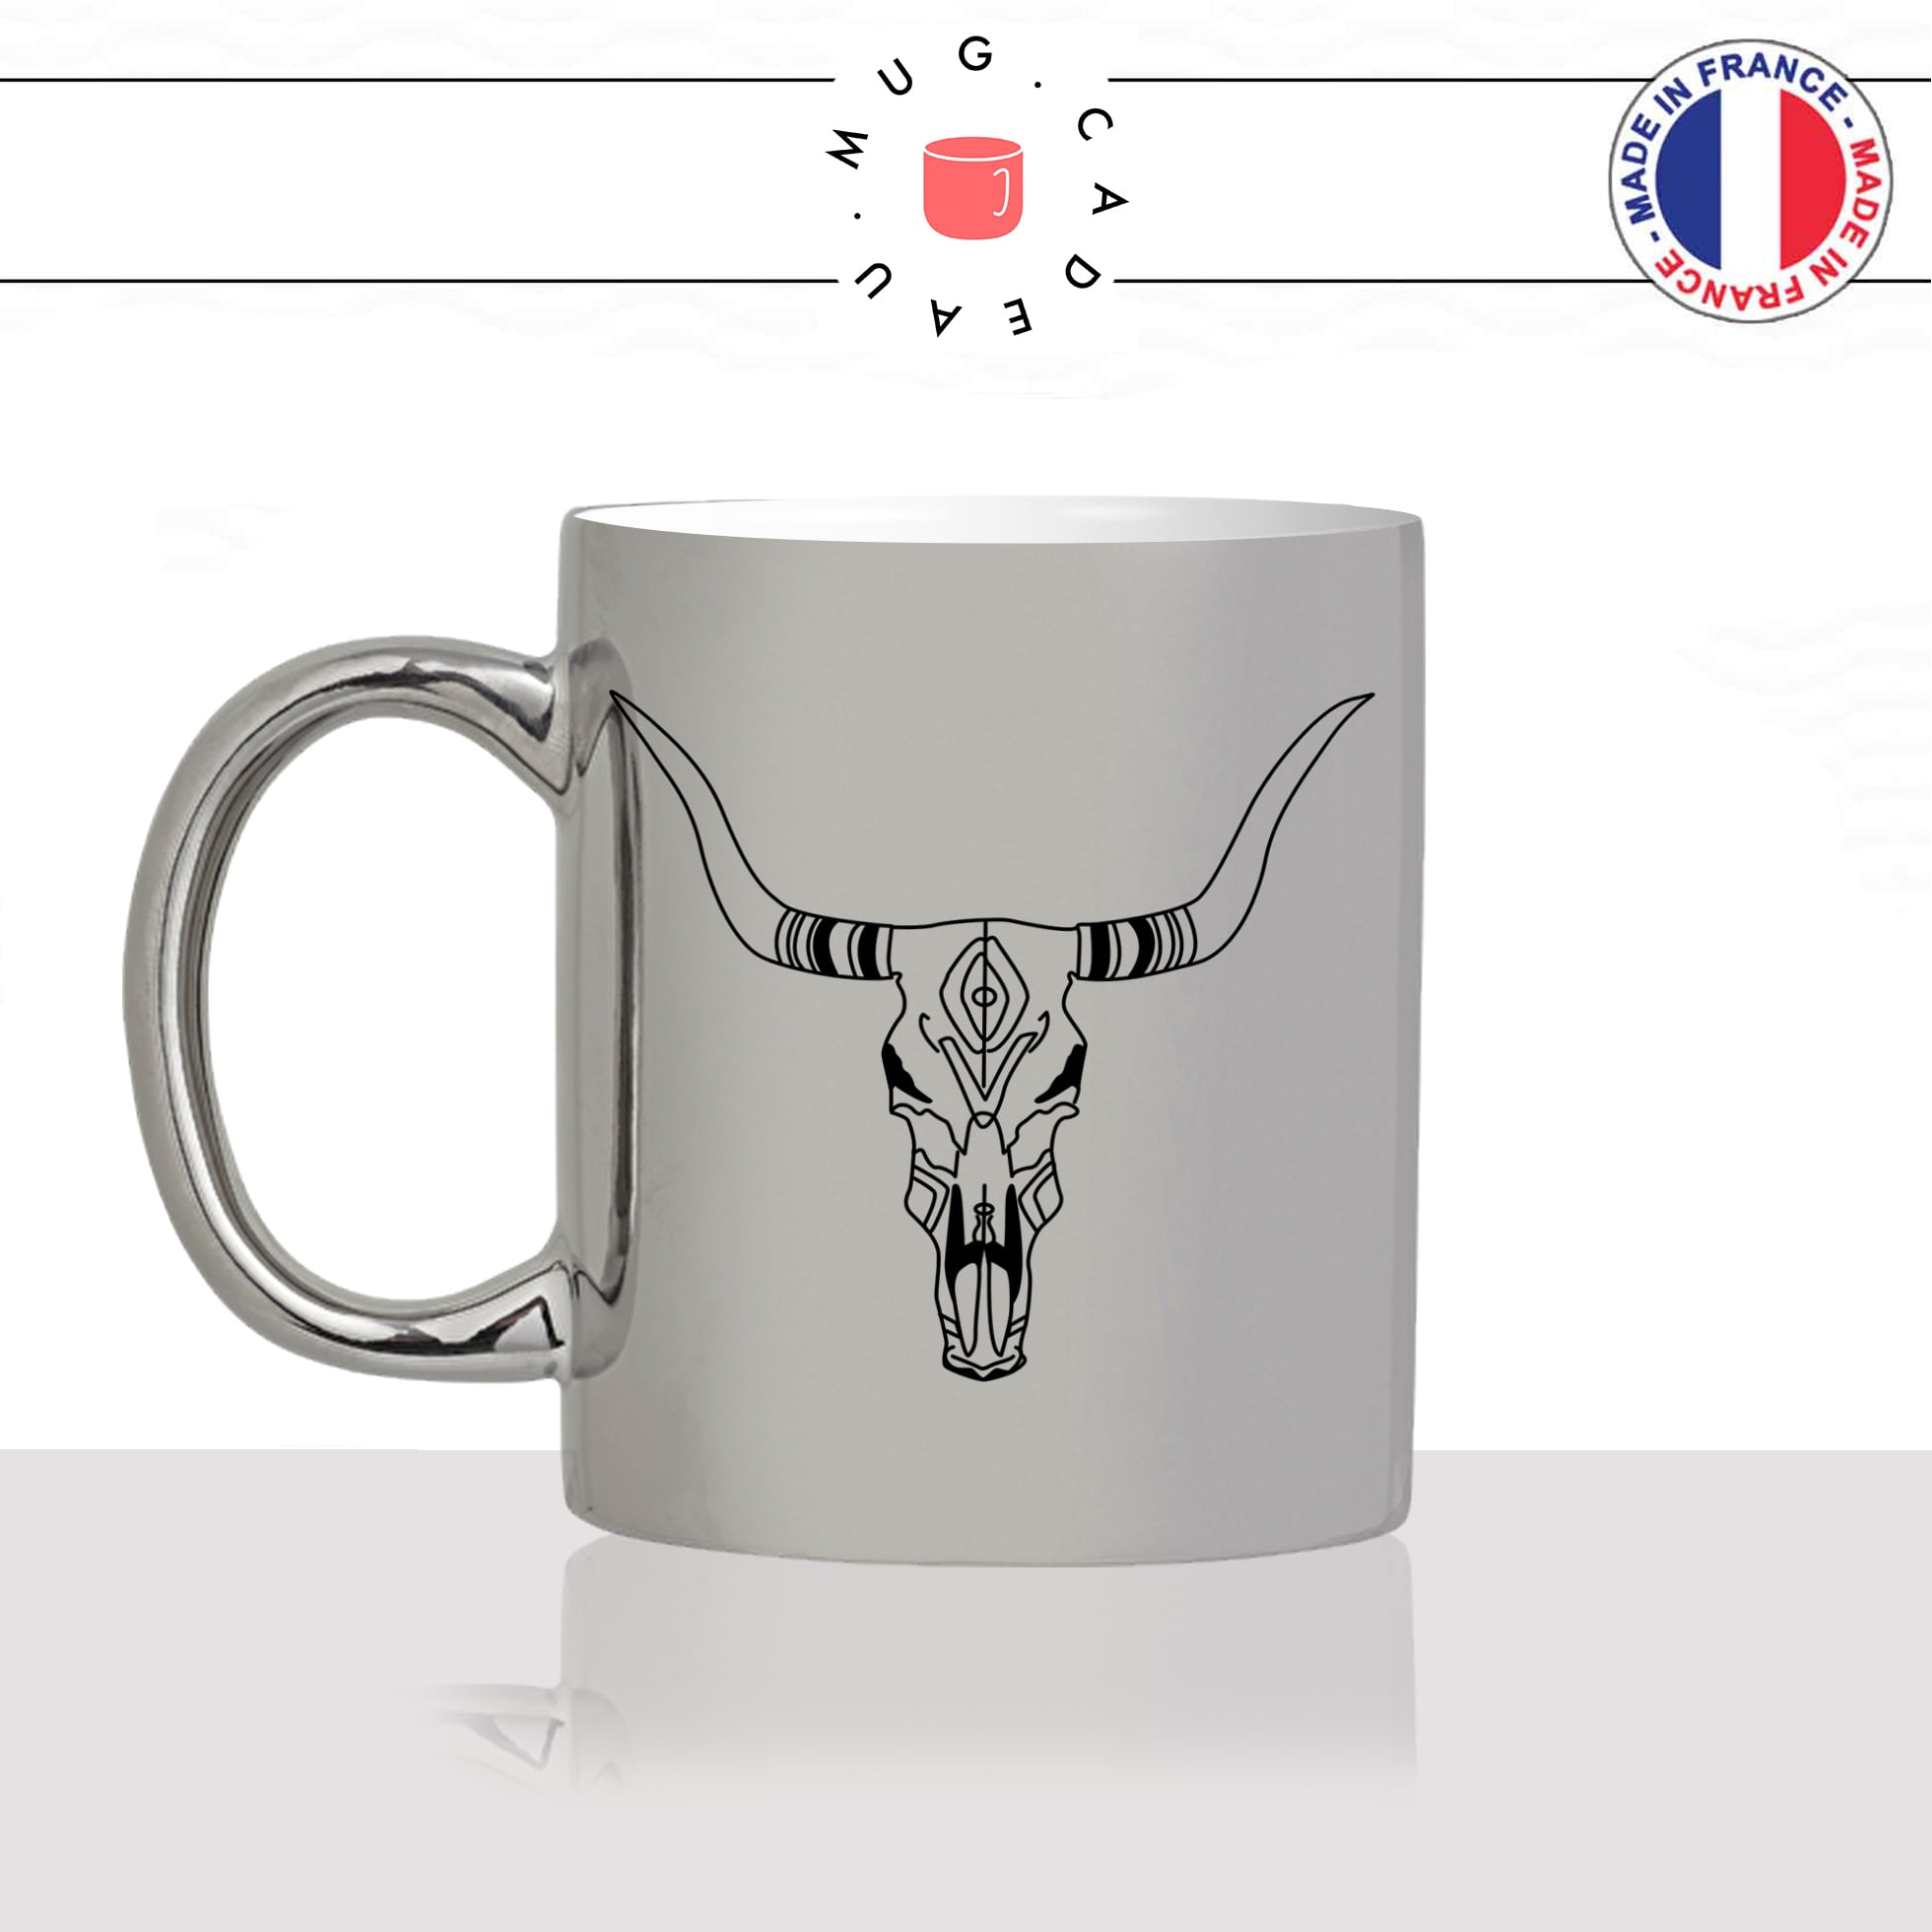 mug-tasse-silver-argenté-argent-tete-de-buffle-crane-dessin-noir-fun-café-thé-idée-cadeau-original-personnalisable-min